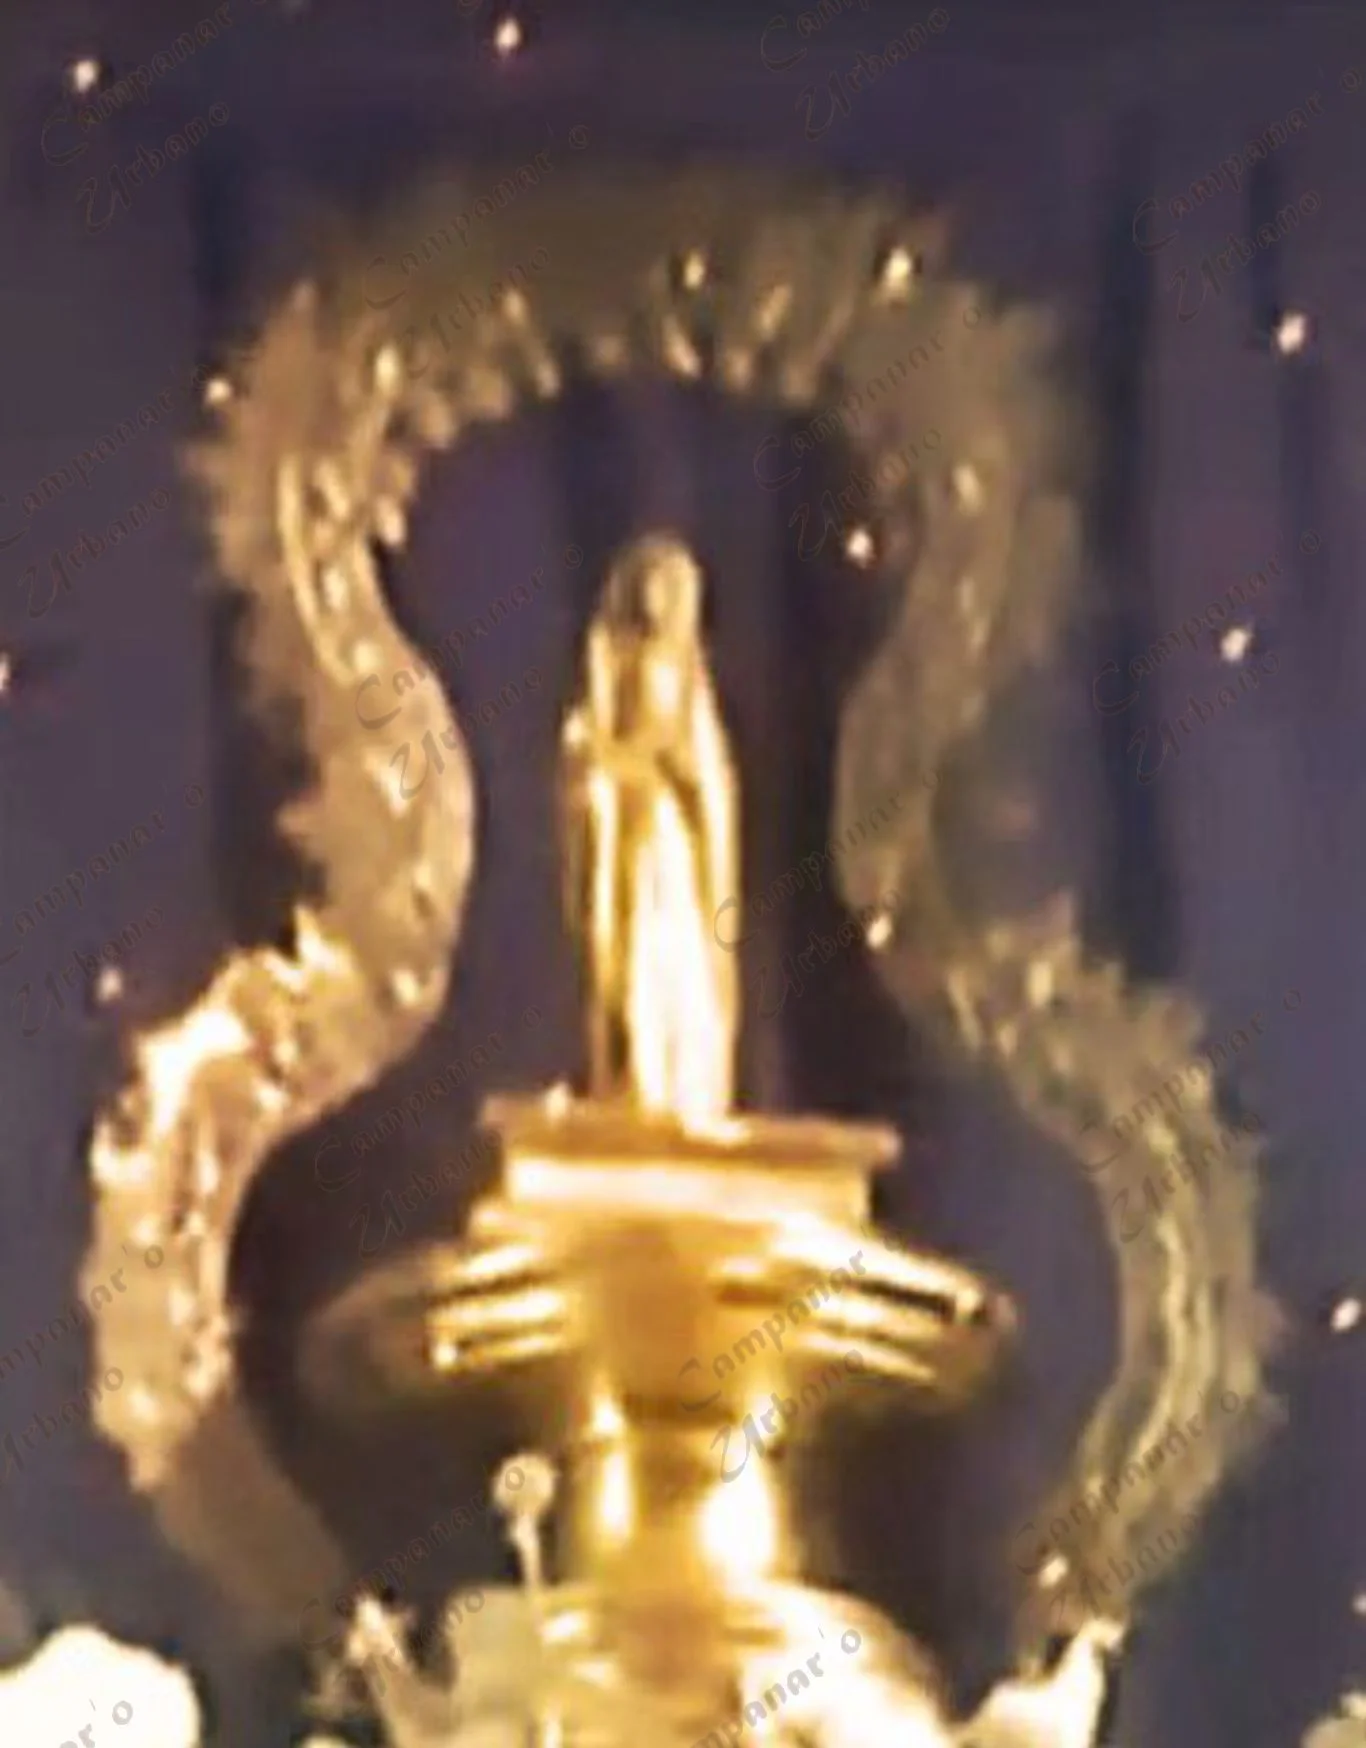 Imagen de Nuestra Señora de Copacabana justo después de ser bañada en oro para preservar su madera. Se destaca la ausencia de la corona de la Virgen. Guarenas, año 1982.